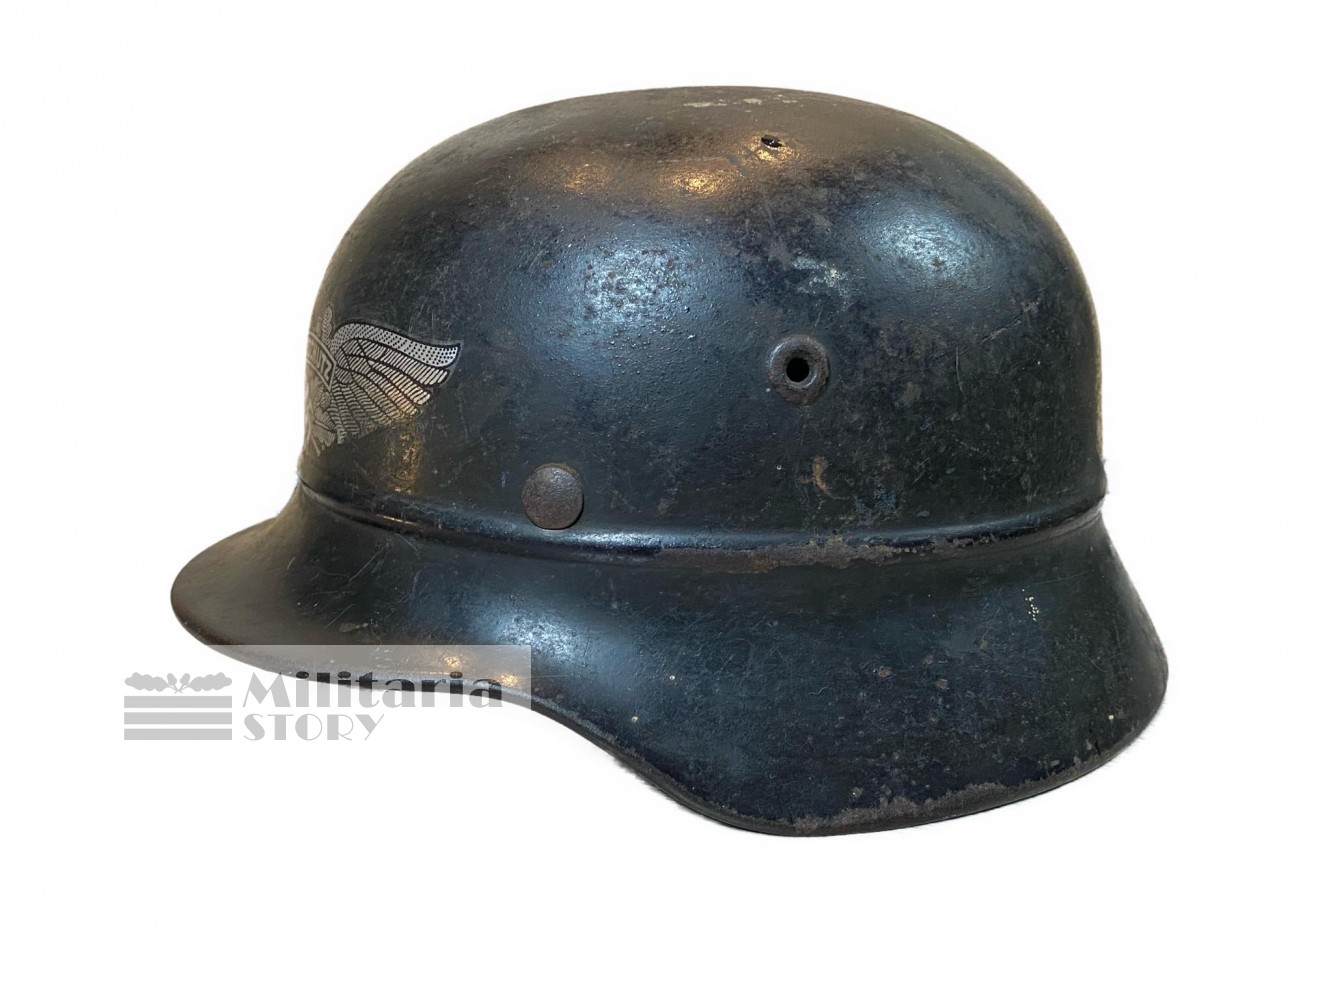 Luftschutz M40 helmet - Luftschutz M40 helmet: Third Reich Headgear